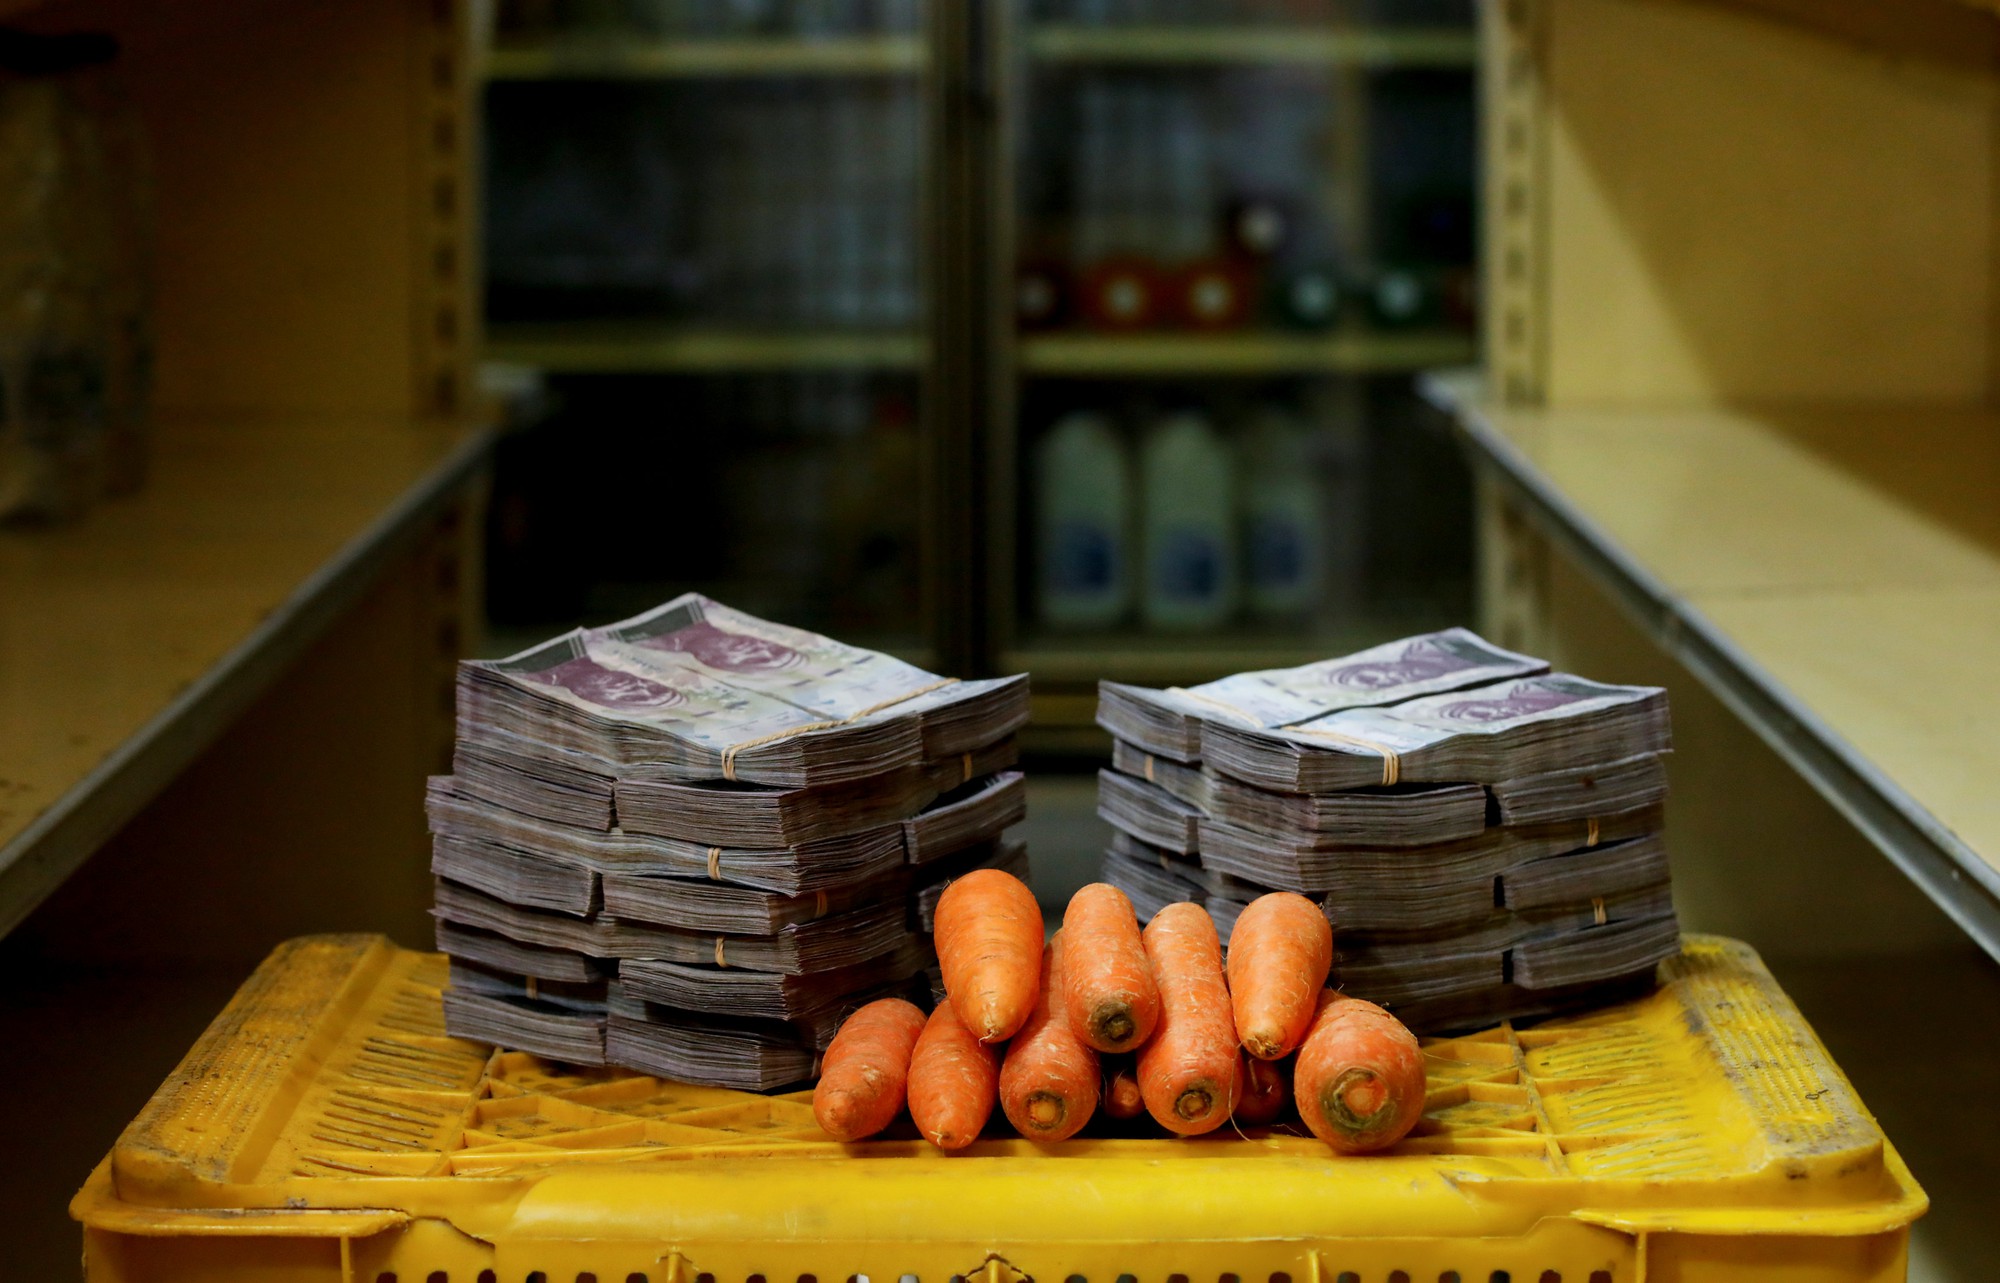 Mất giá khủng như tiền Venezuela: 1 kg thịt giá 9,5 triệu bolivar! - Ảnh 5.